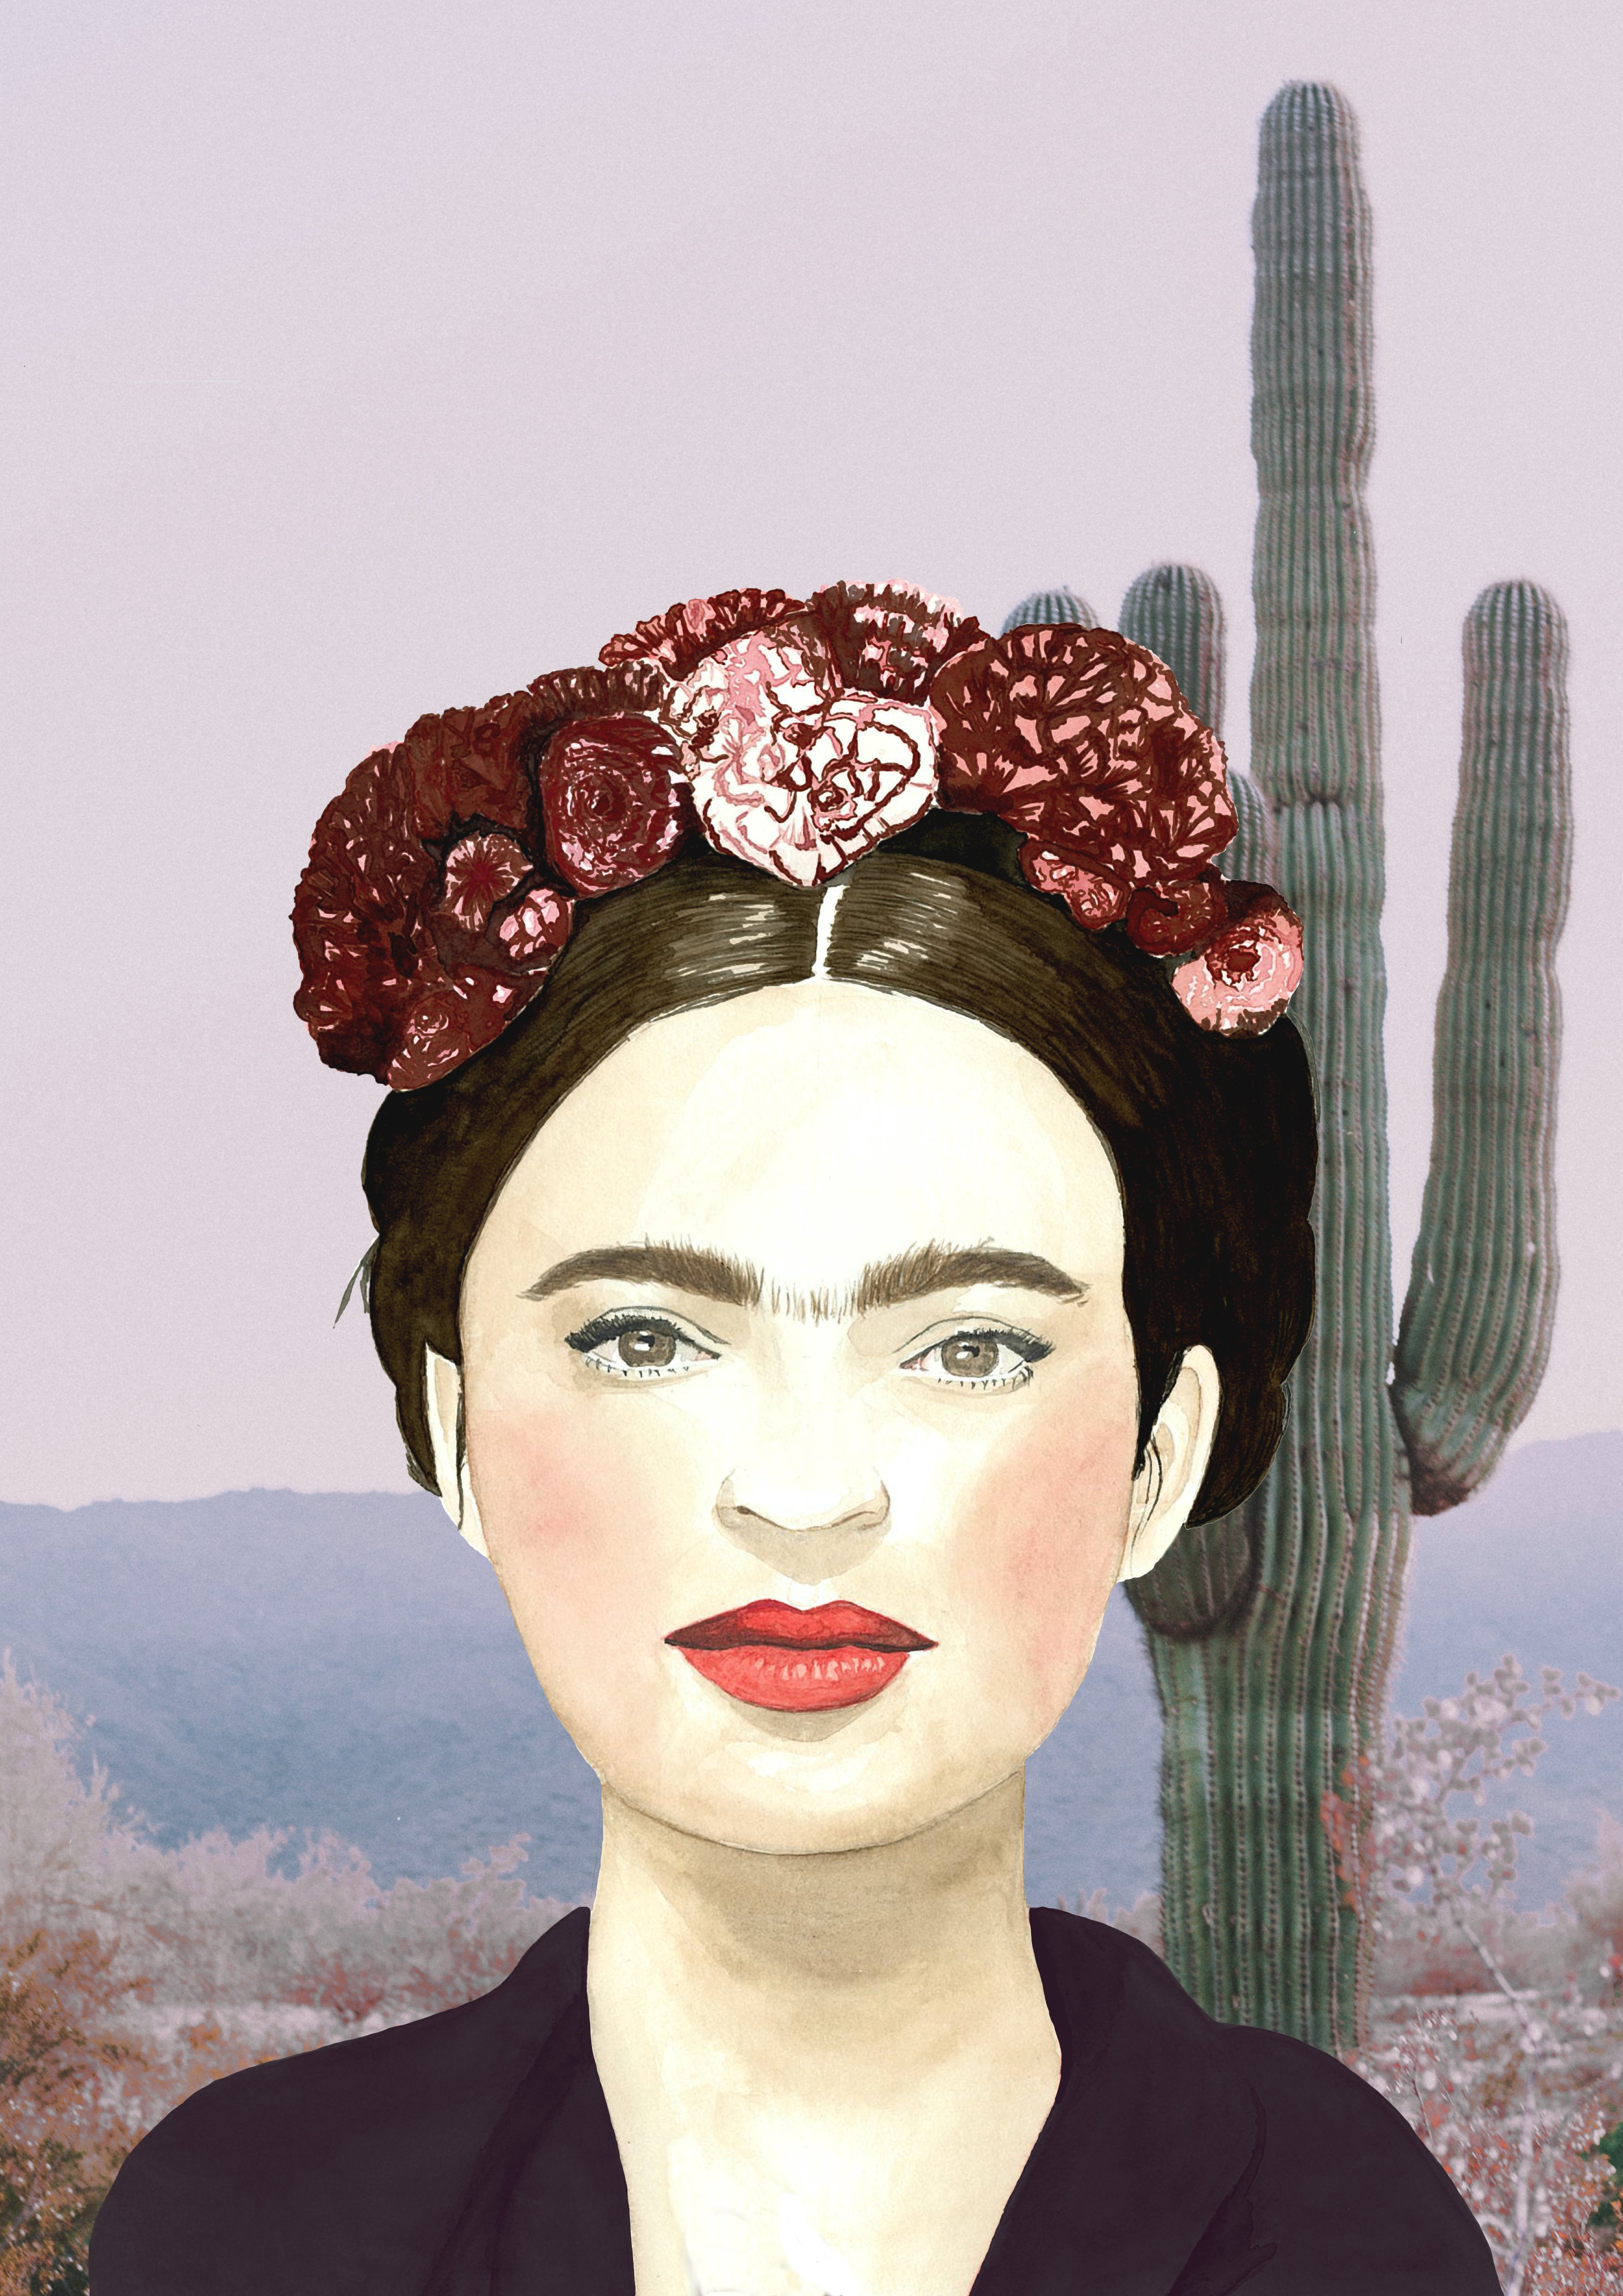 Impresión de acuarela original. Frida, rodeada de cactus. Disponible en tamaños A3 y A4